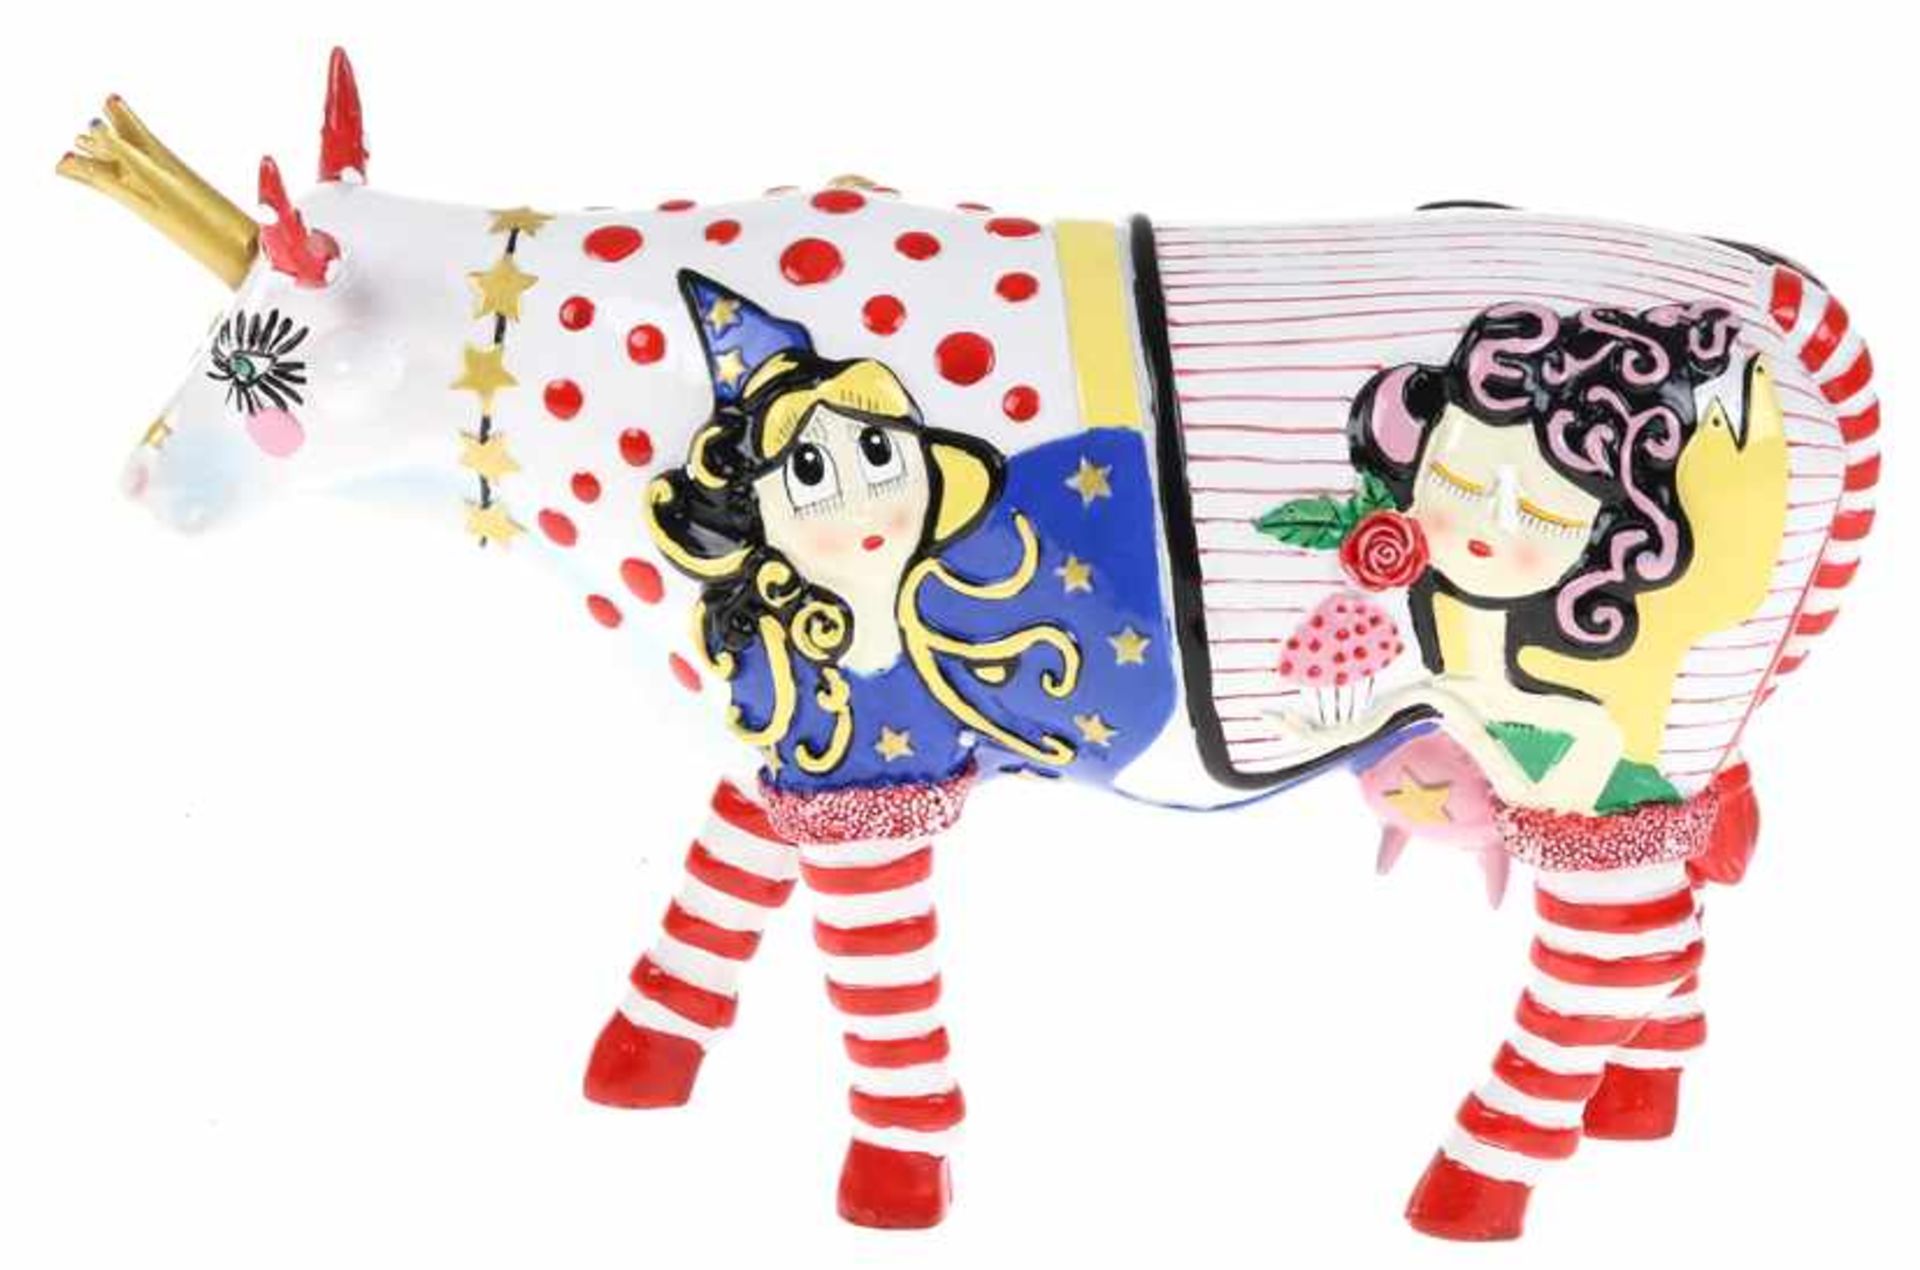 Polychroom gedecoreerde sculptuur van een koe, gemerkt: Cow Parade, ontwerp: Irene Lenguas, in